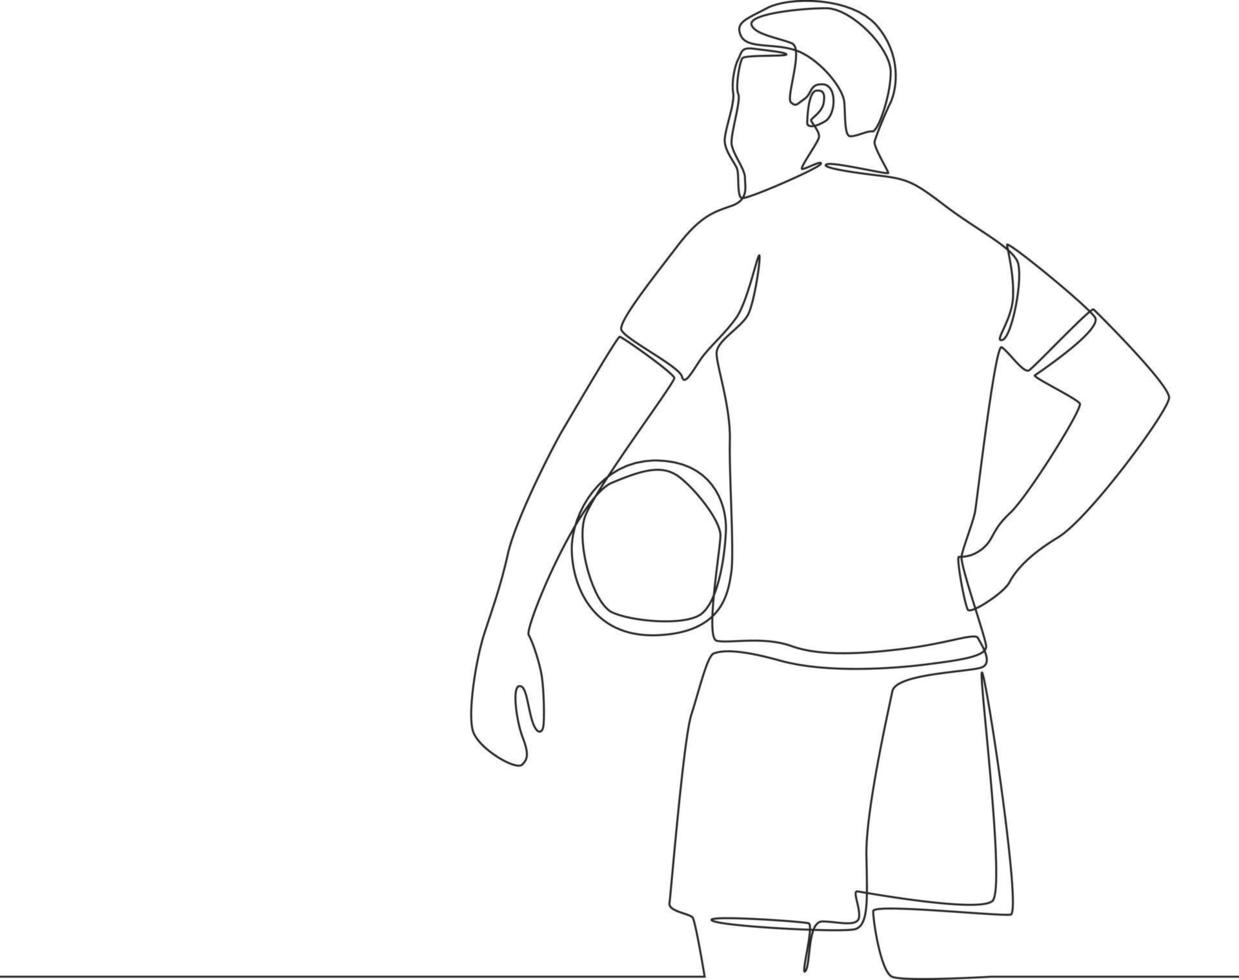 durchgehende einzeilige zeichnung eines fußballspielers, der einen fußball isoliert auf weißem hintergrund hält. moderne einzeilige zeichnen design vektorgrafik illustration. vektor